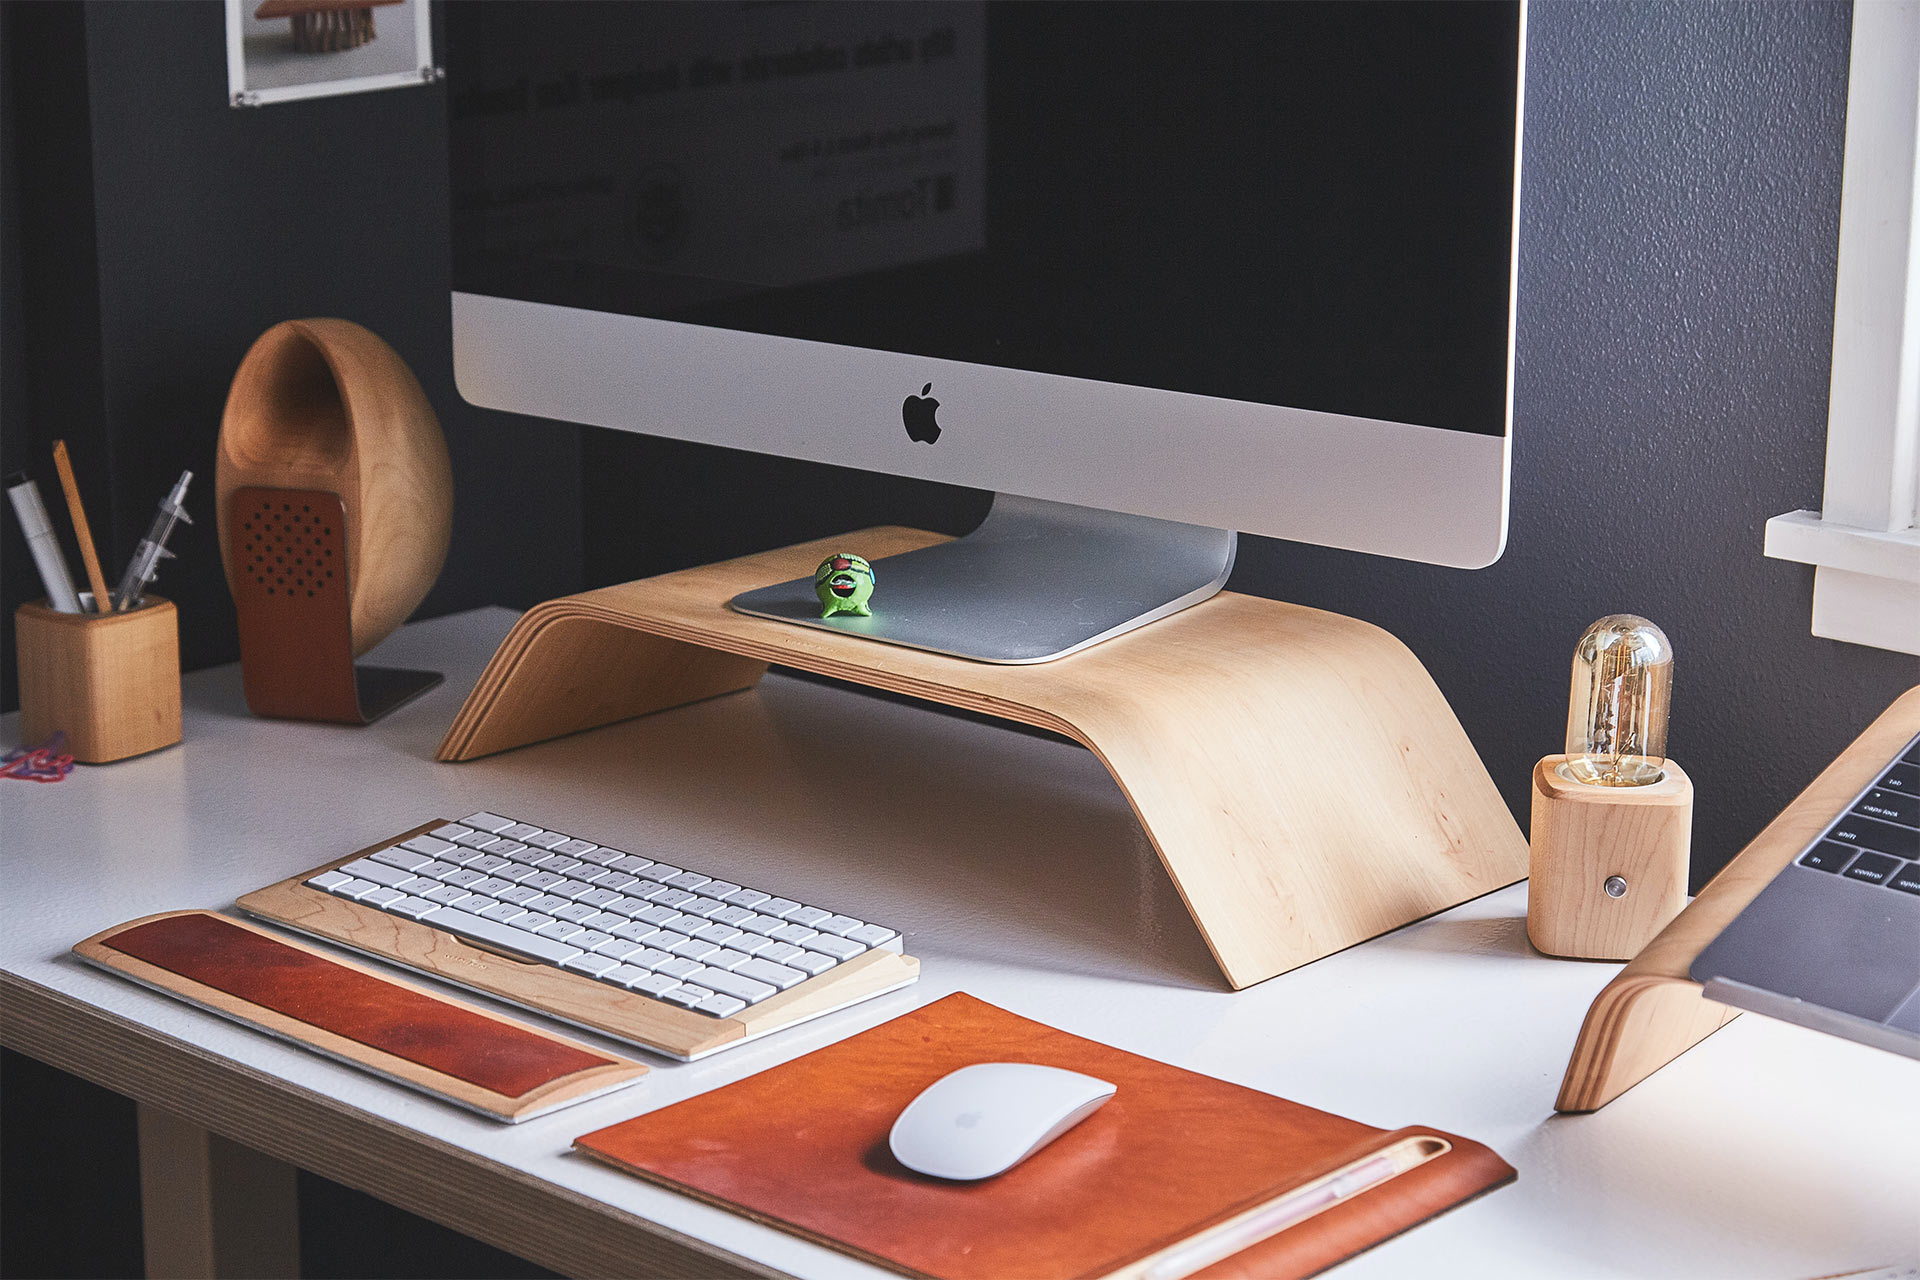 デスクの上の木製スタンドに置かれた iMac。その前にはワイヤレス キーボードとマウスが置かれている